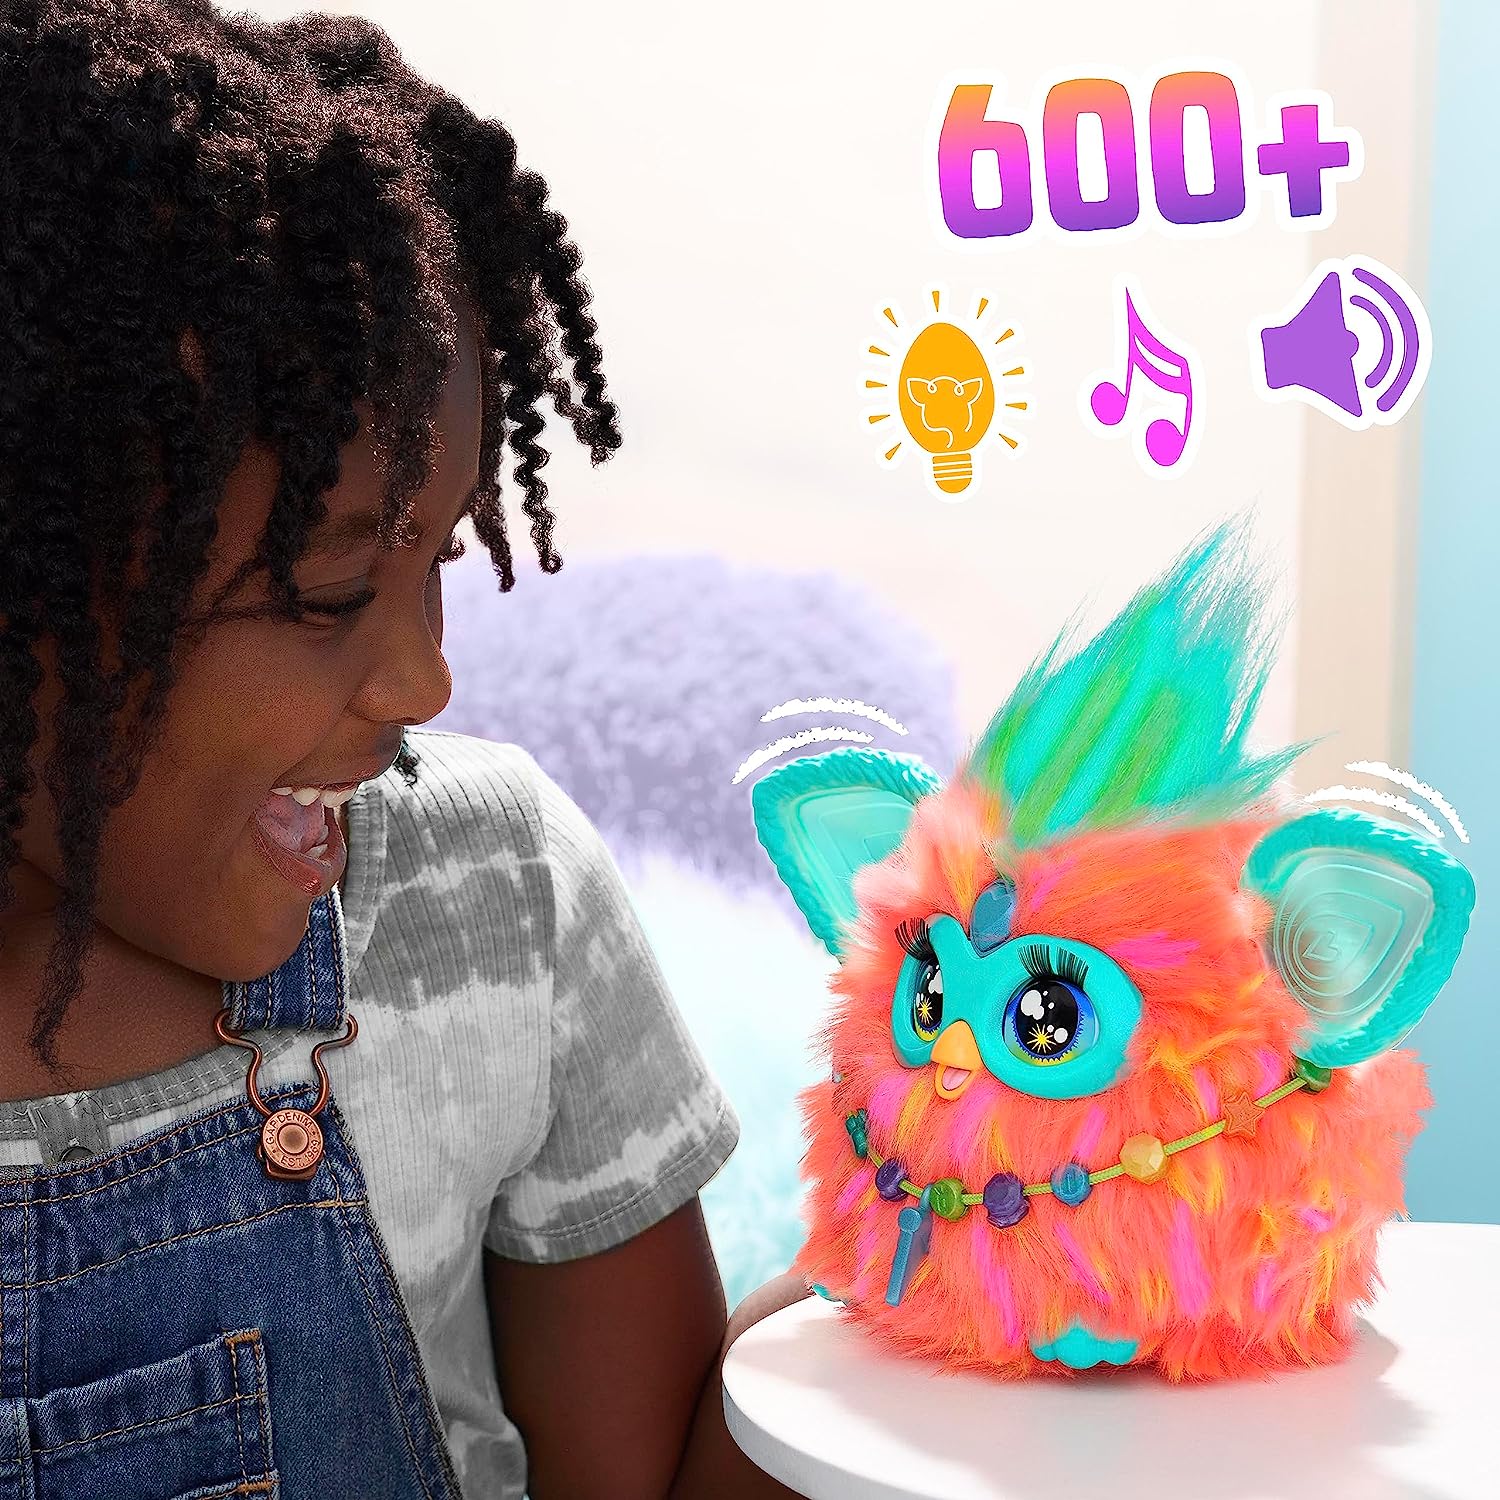 Furby 15 Fashion Accessories Interactive Plush Toys